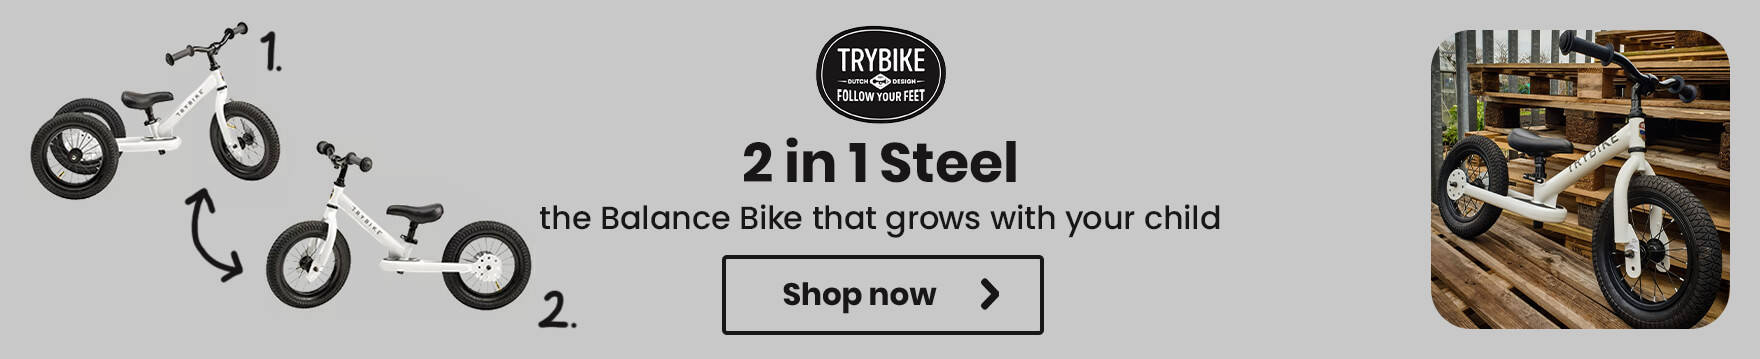 Trybike 2 in 1 Steel